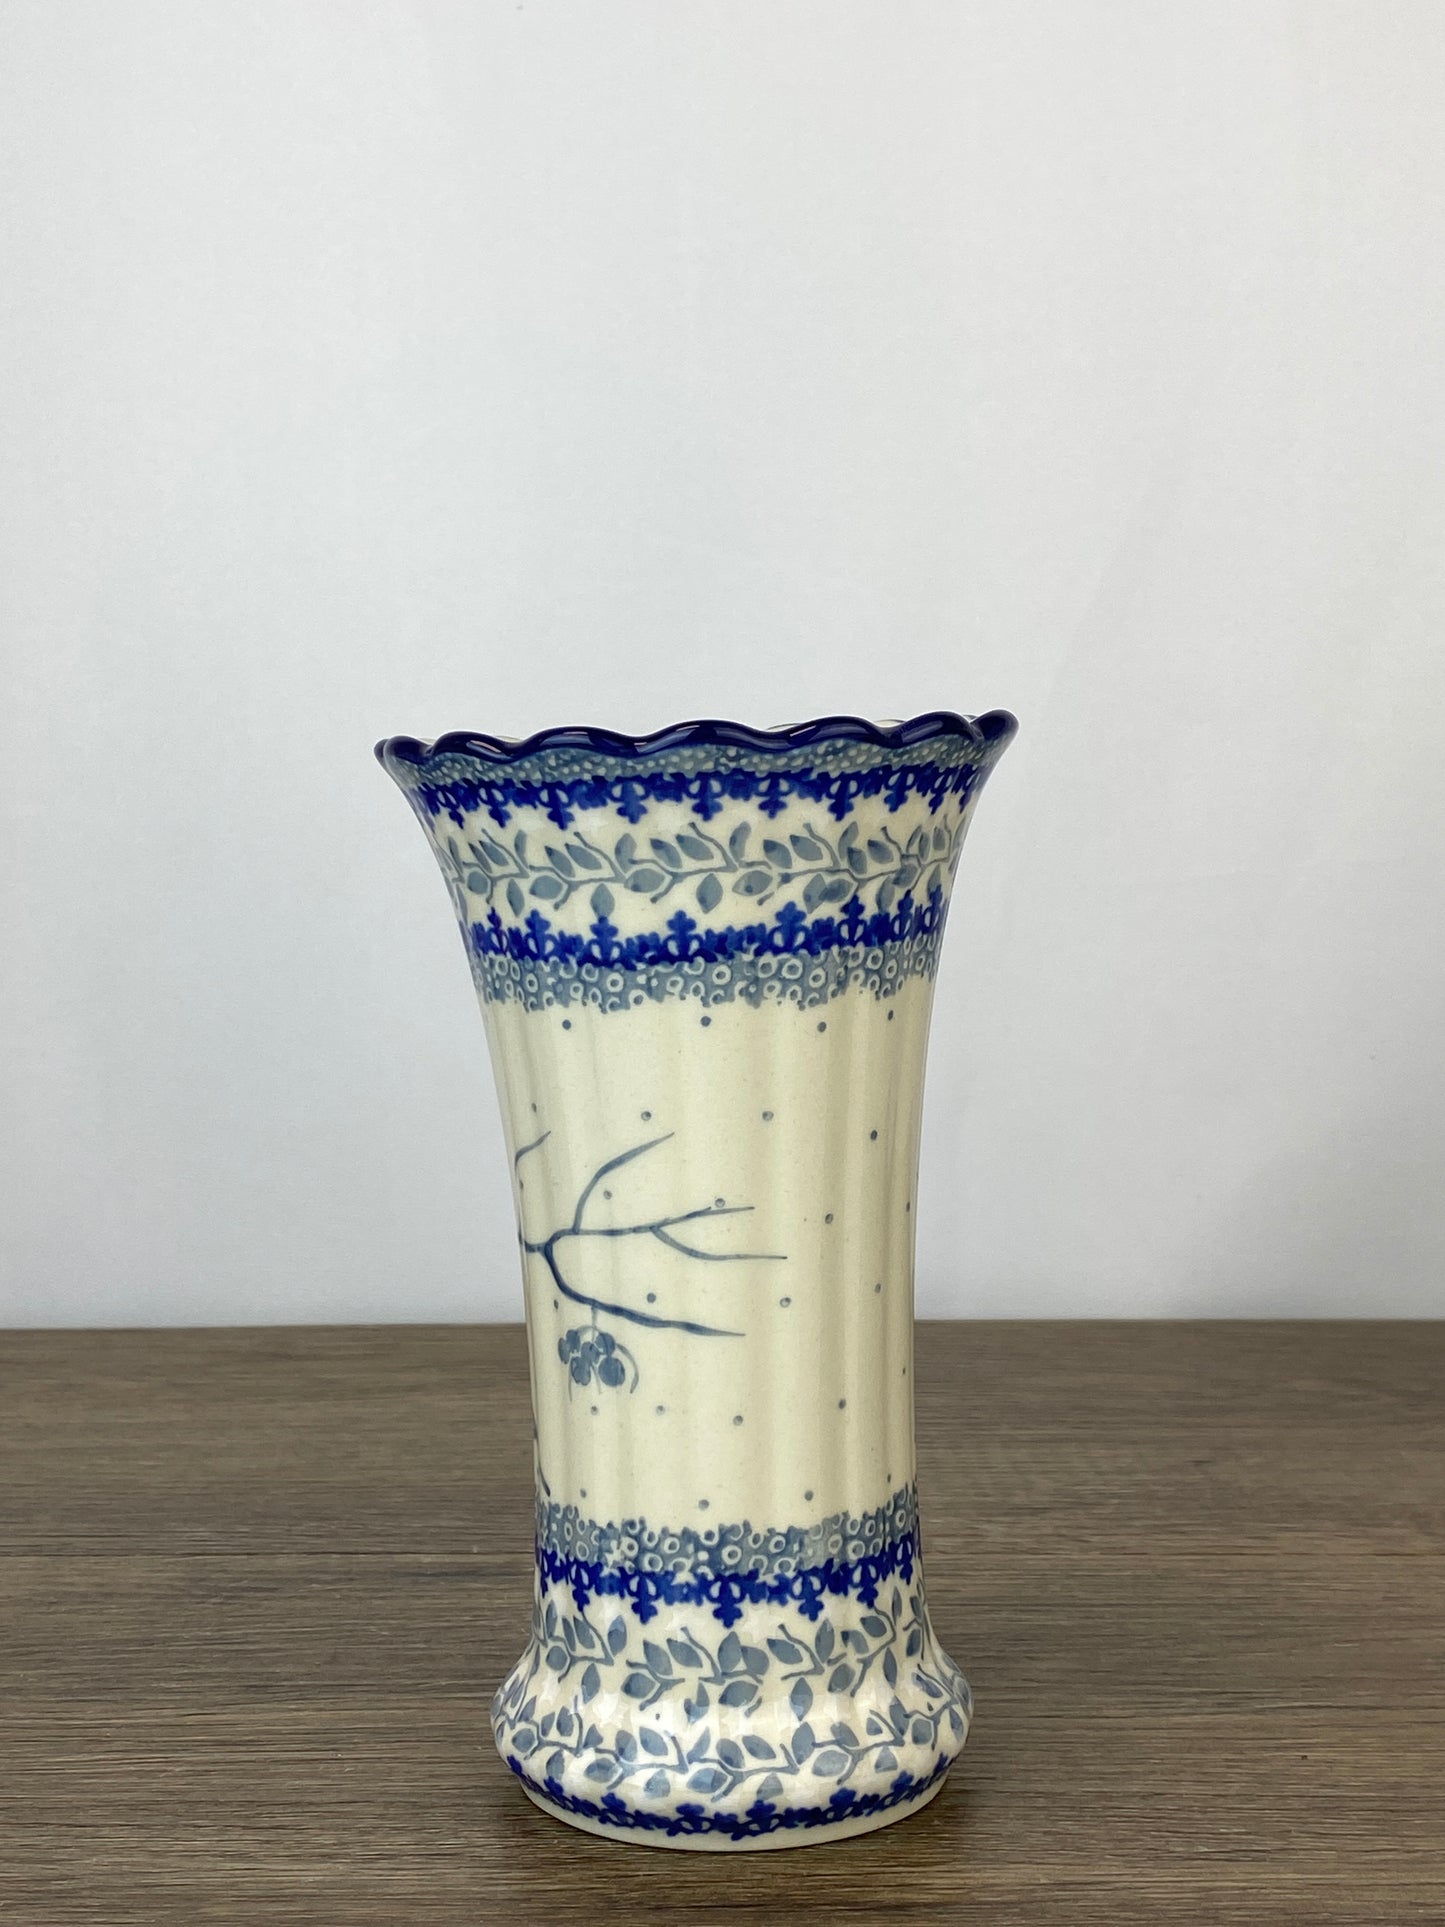 Ruffled Unikat Vase - Shape 50 - Pattern U4830